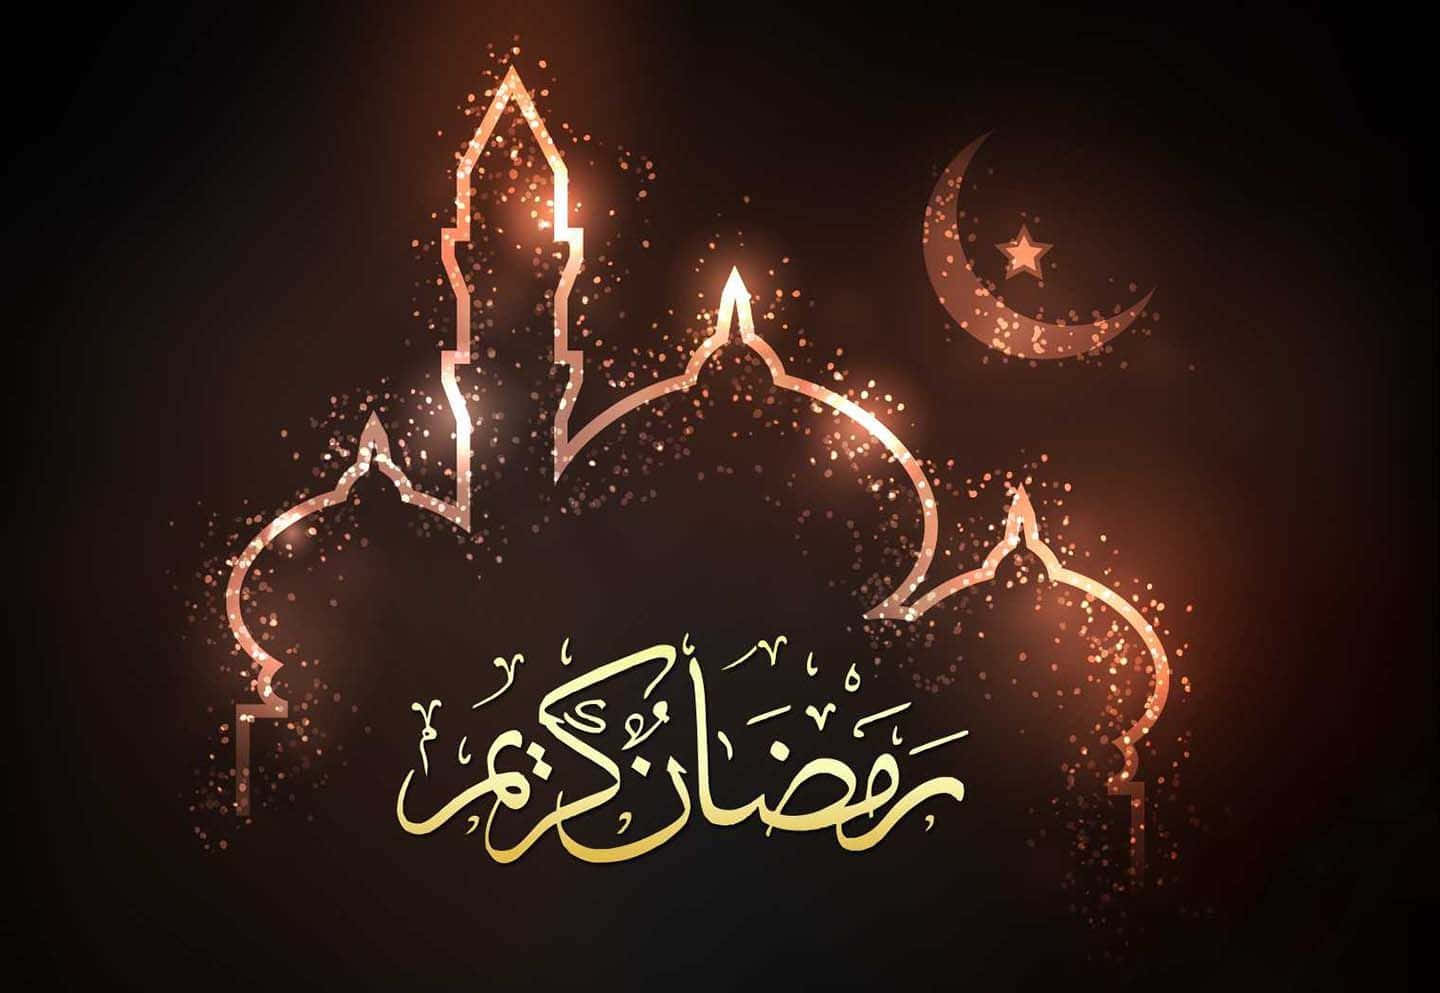 Celebrail Ramadan Nello Spirito Di Fede, Famiglia E Riflessione.